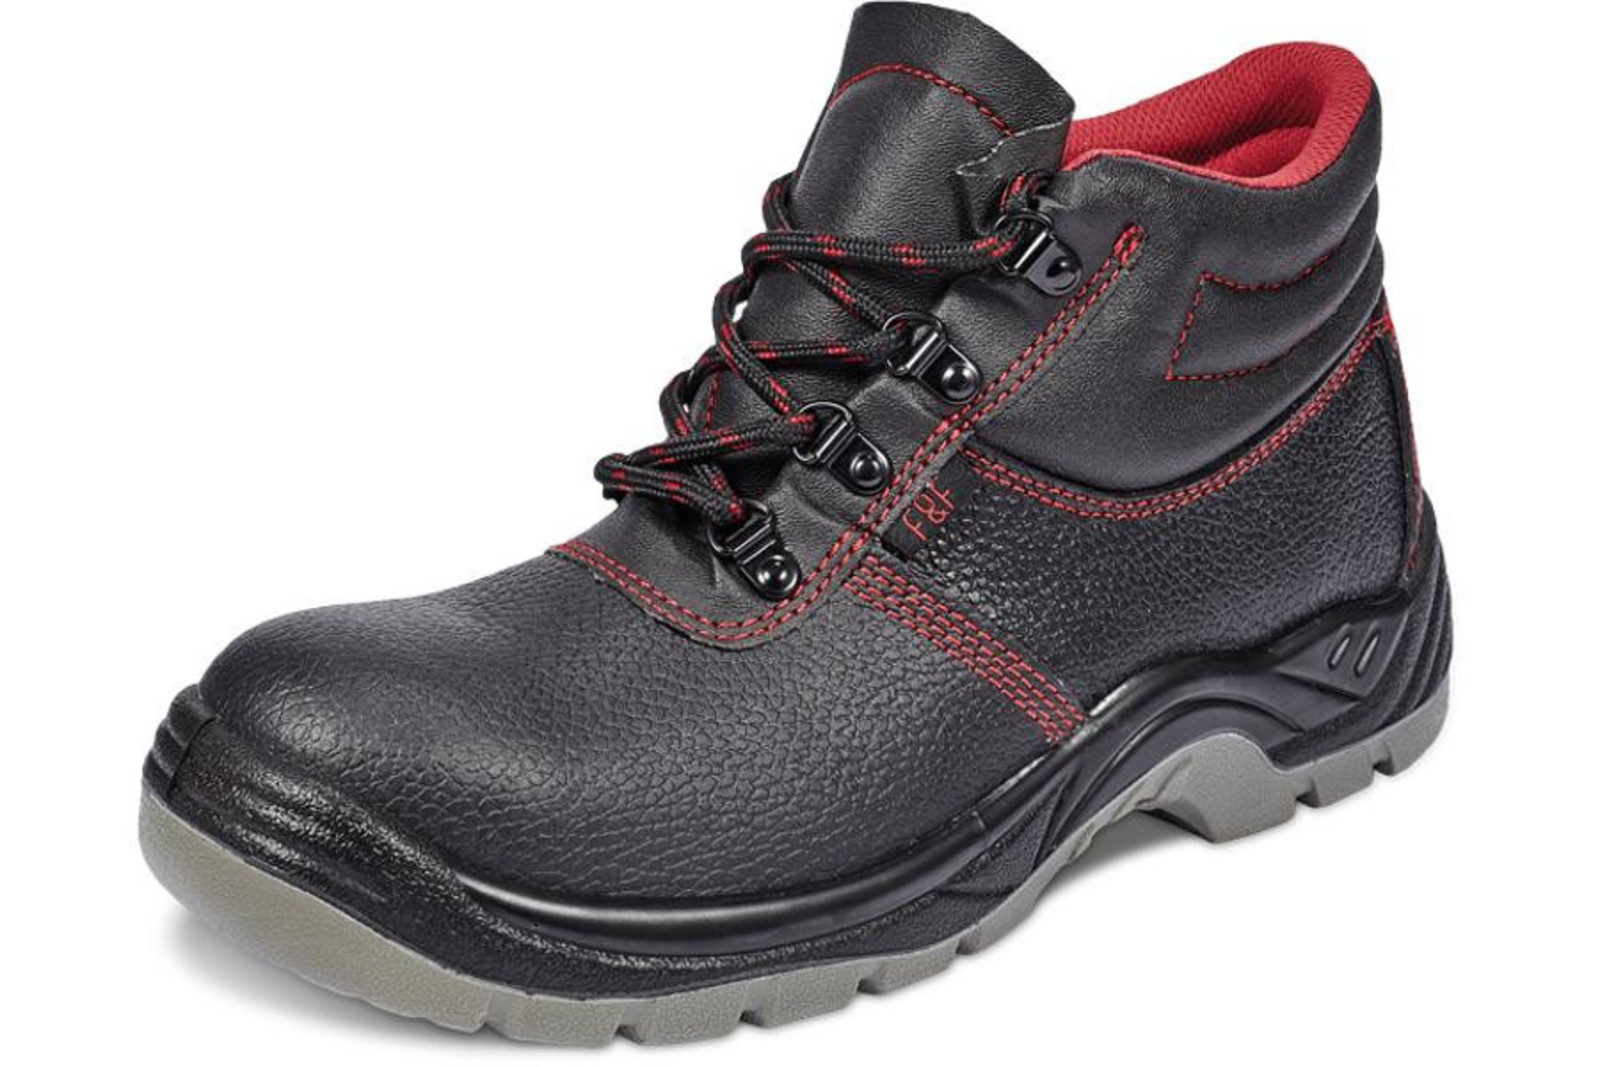 Bezpečnostná obuv SC 03-001 S1P - veľkosť: 37, farba: čierna